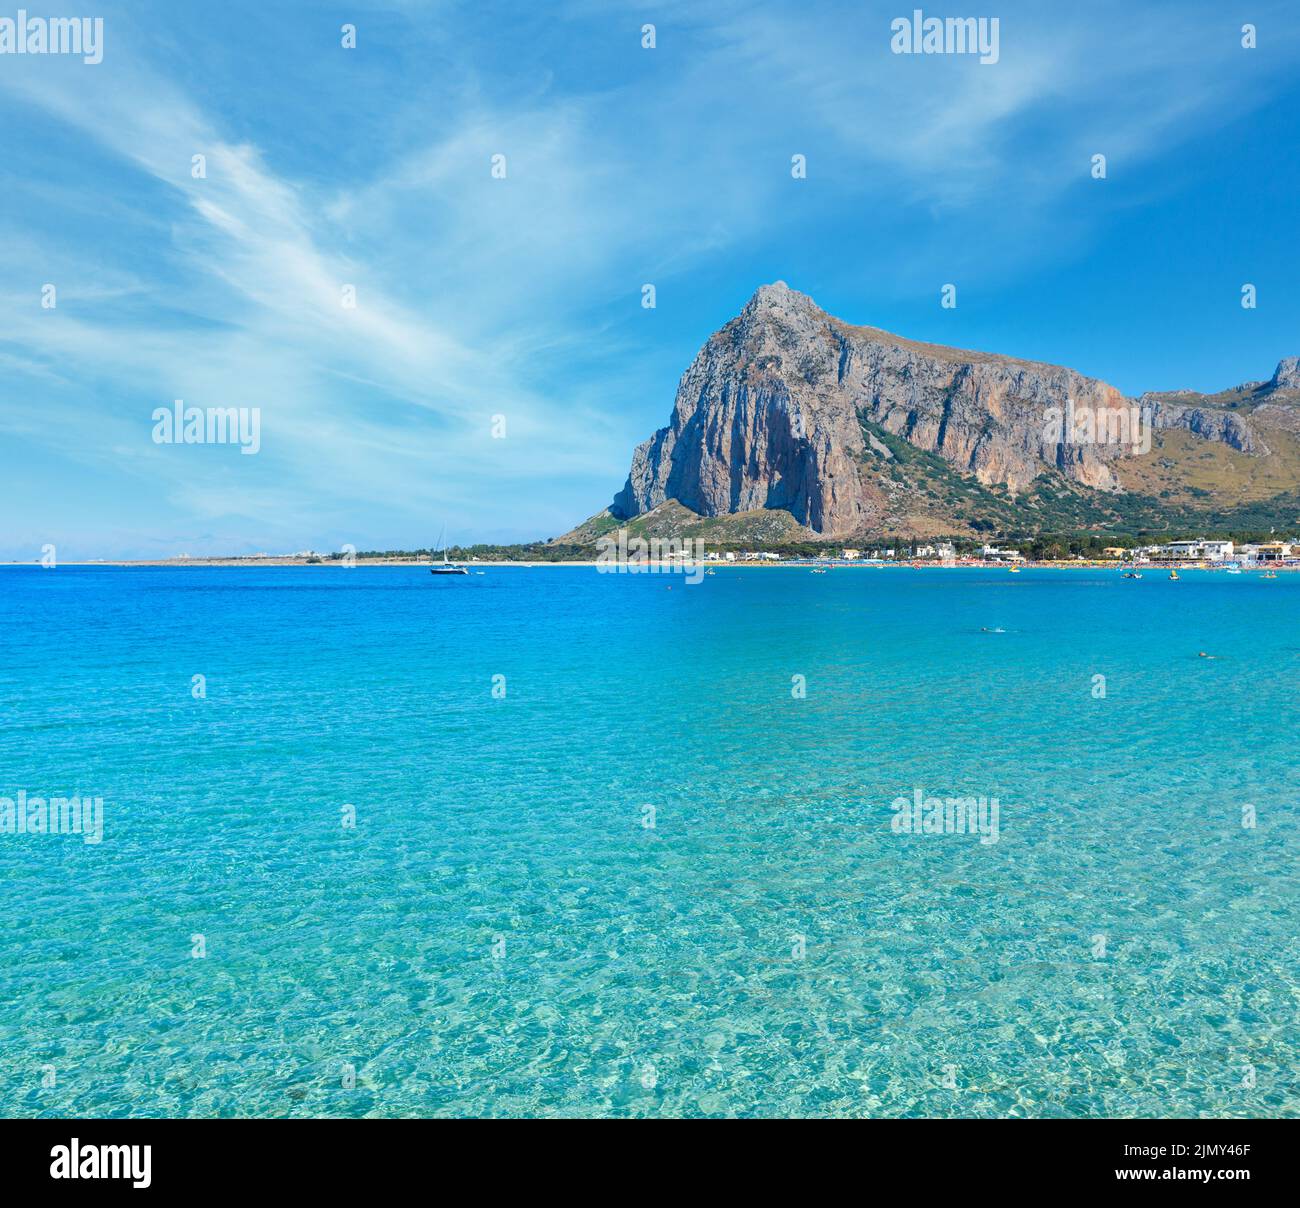 San Vito lo Capo beach, Sicily, Italy Stock Photo